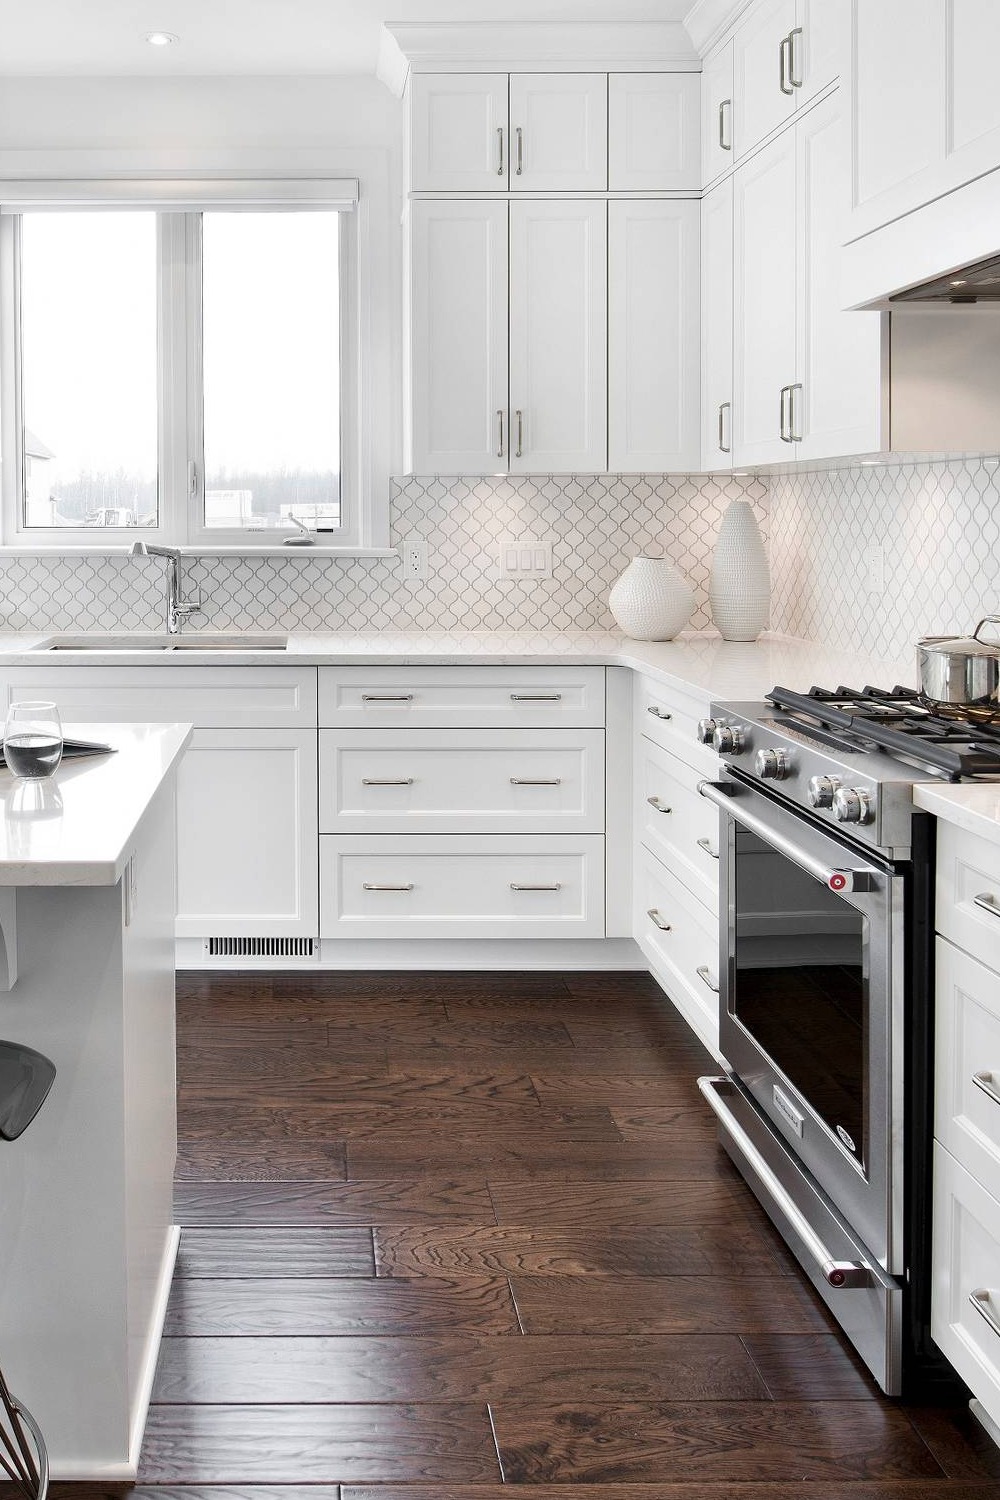 White Arabesque Tile Backsplash Shaker Cabinets Modern Kitchen Look Create Floor